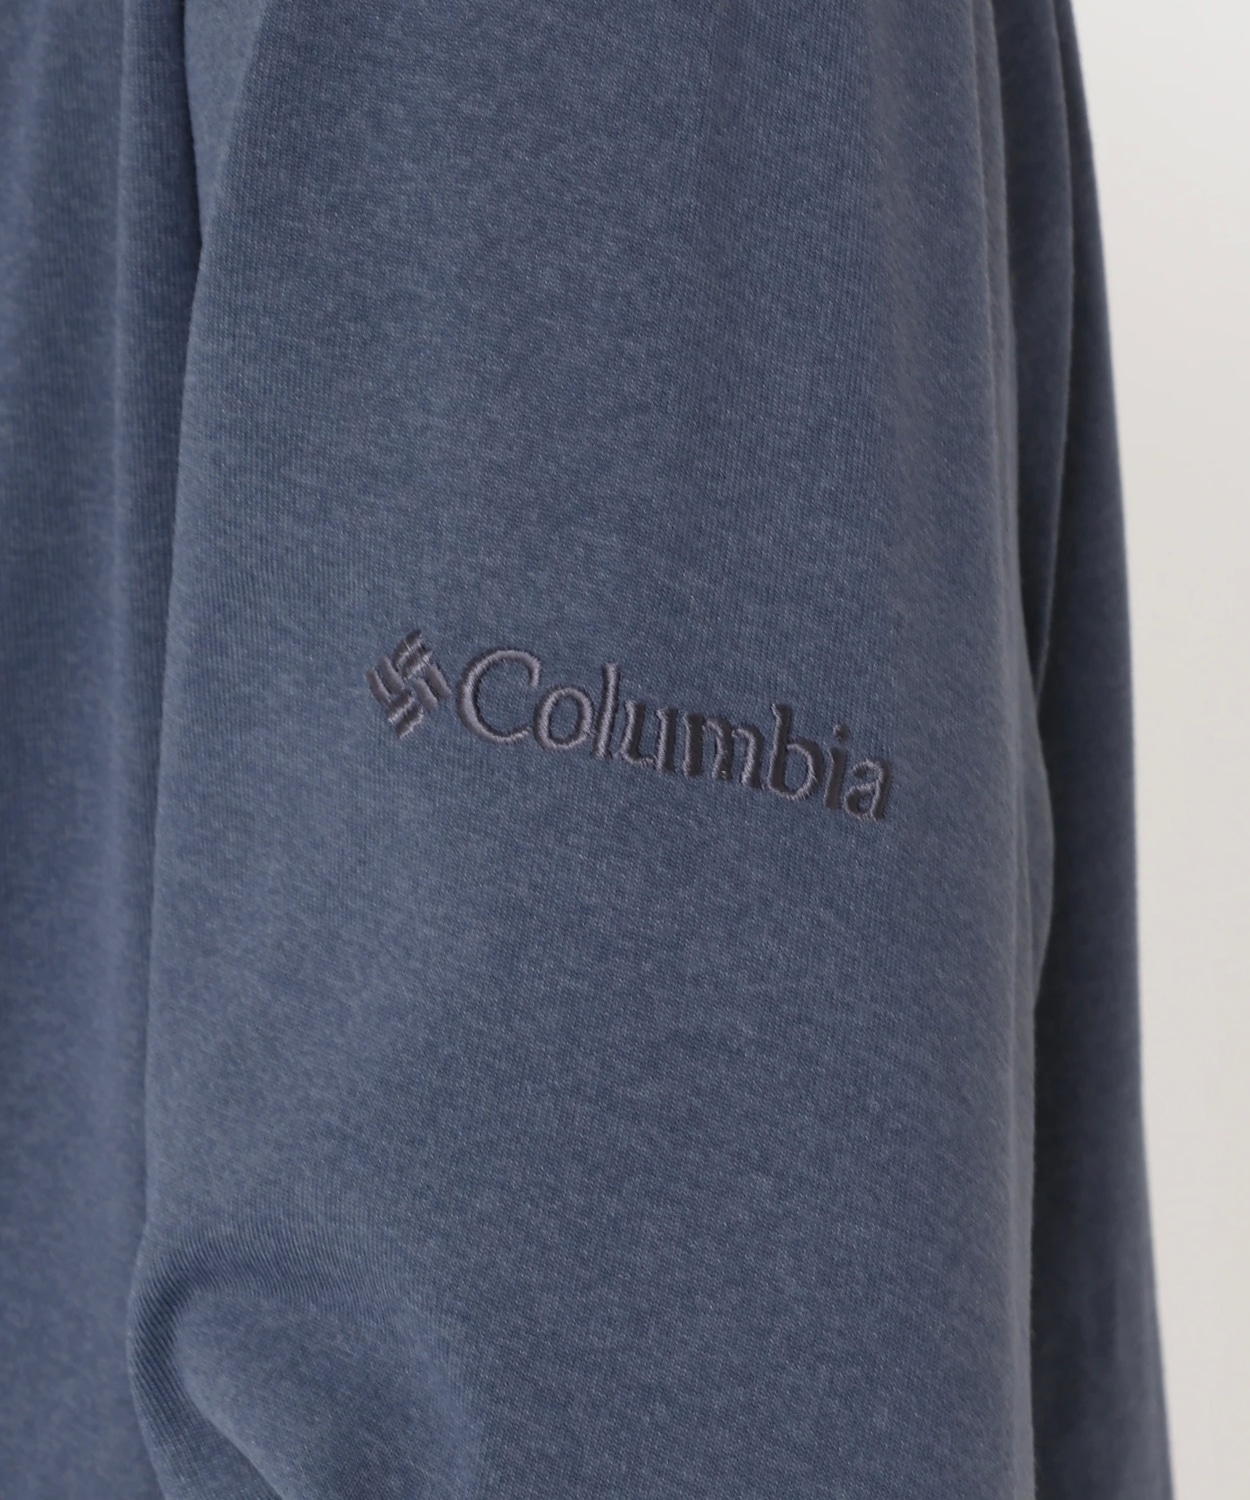 リーディトレイルロングスリーブTシャツ(XXS Black, Graphic Mountain People): アウトレット商品以外用│コロンビア( Columbia)公式通販サイト